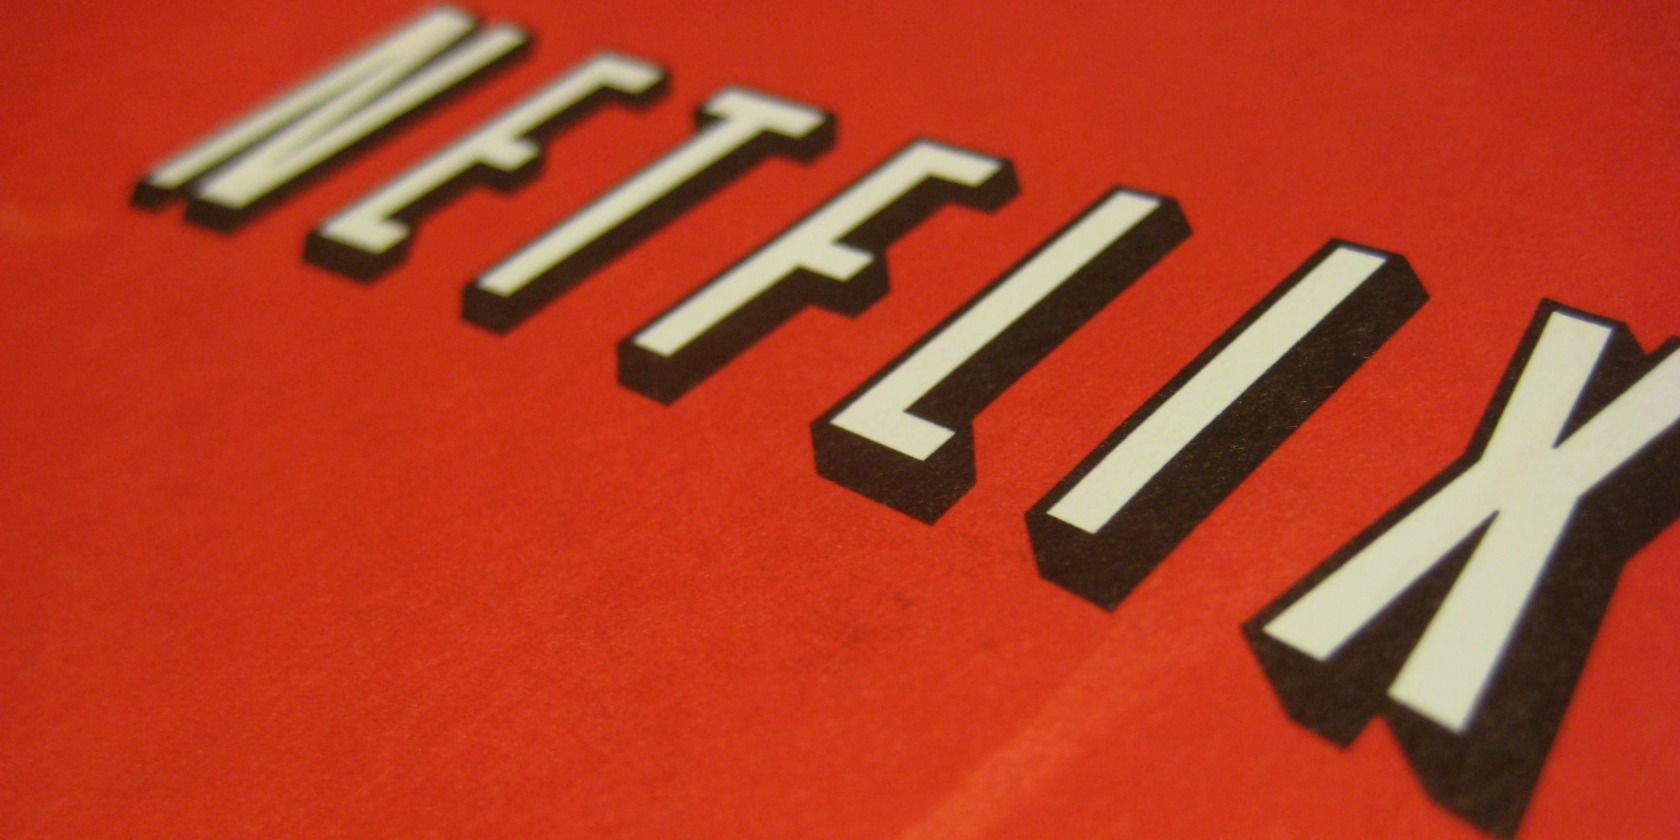 Netflix logo on red background